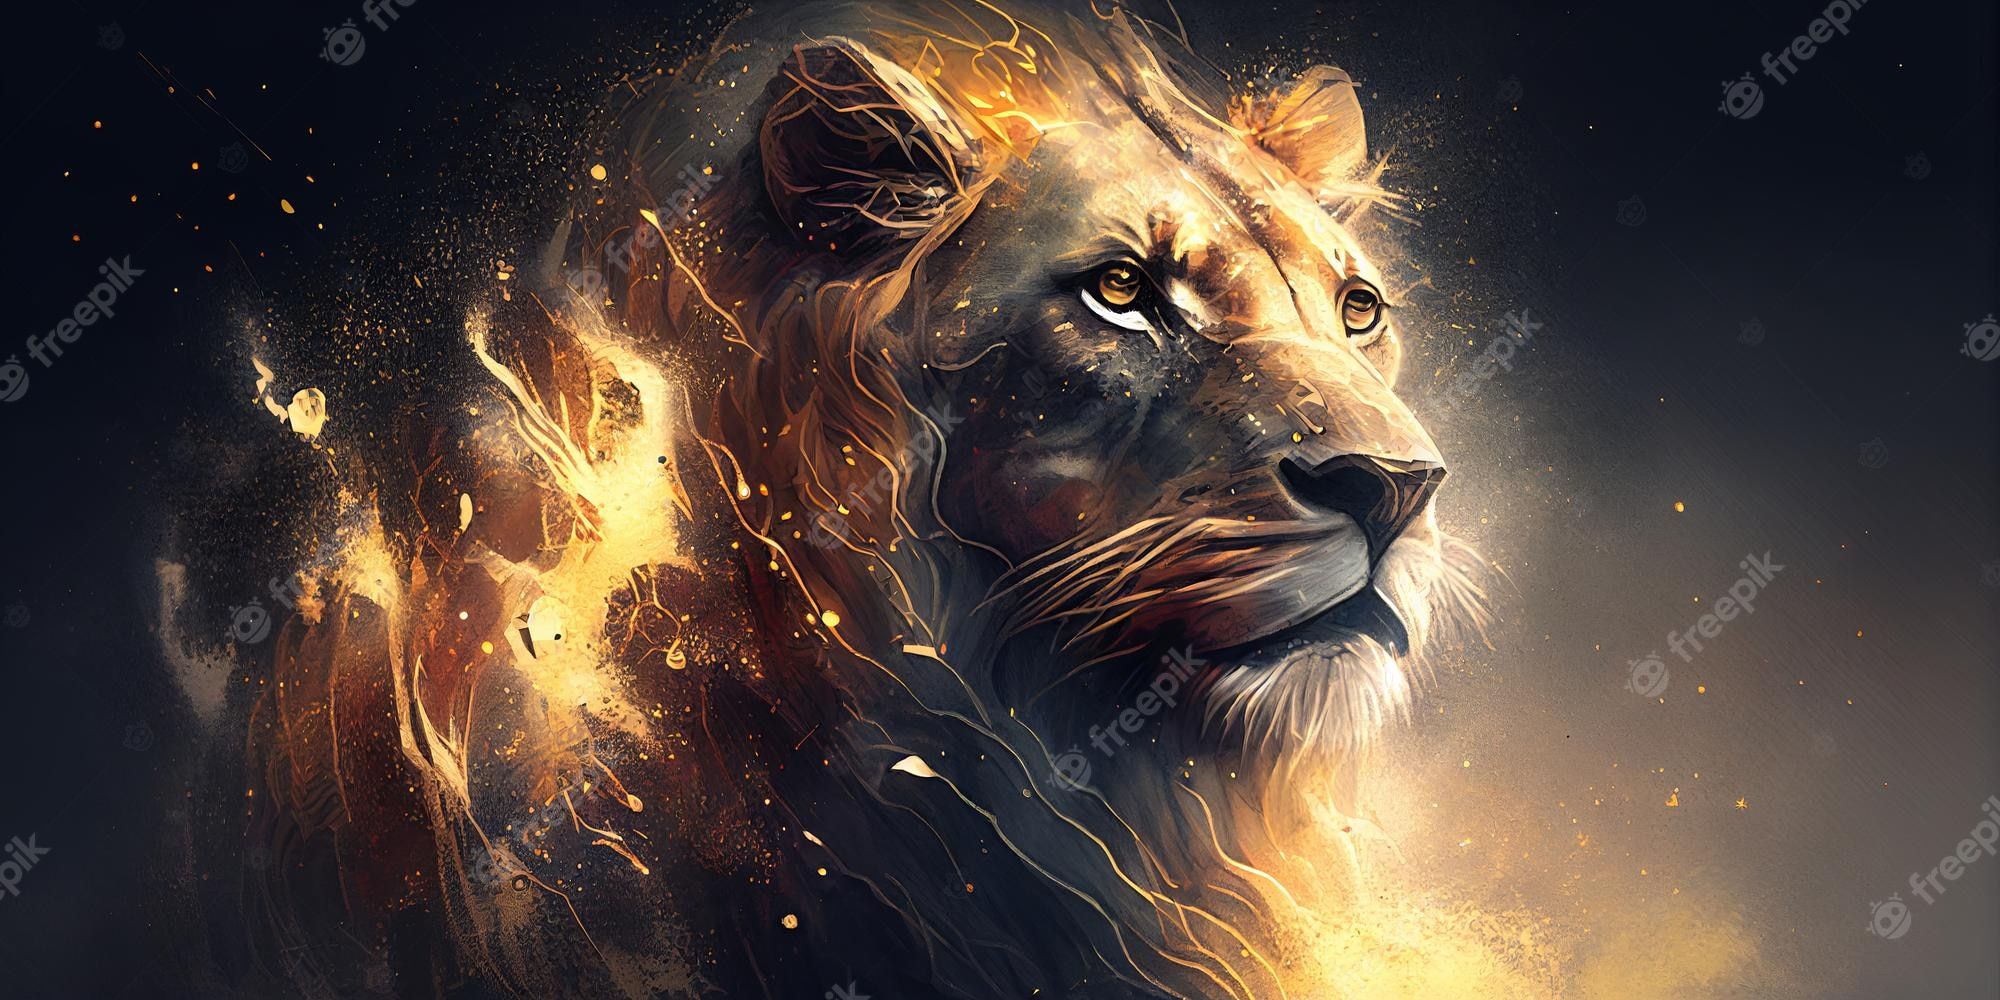  Löwen Hintergrundbild 2000x1000. Zeichnen eines löwen in gold auf schwarzem hintergrund porträt nahaufnahme generative ki